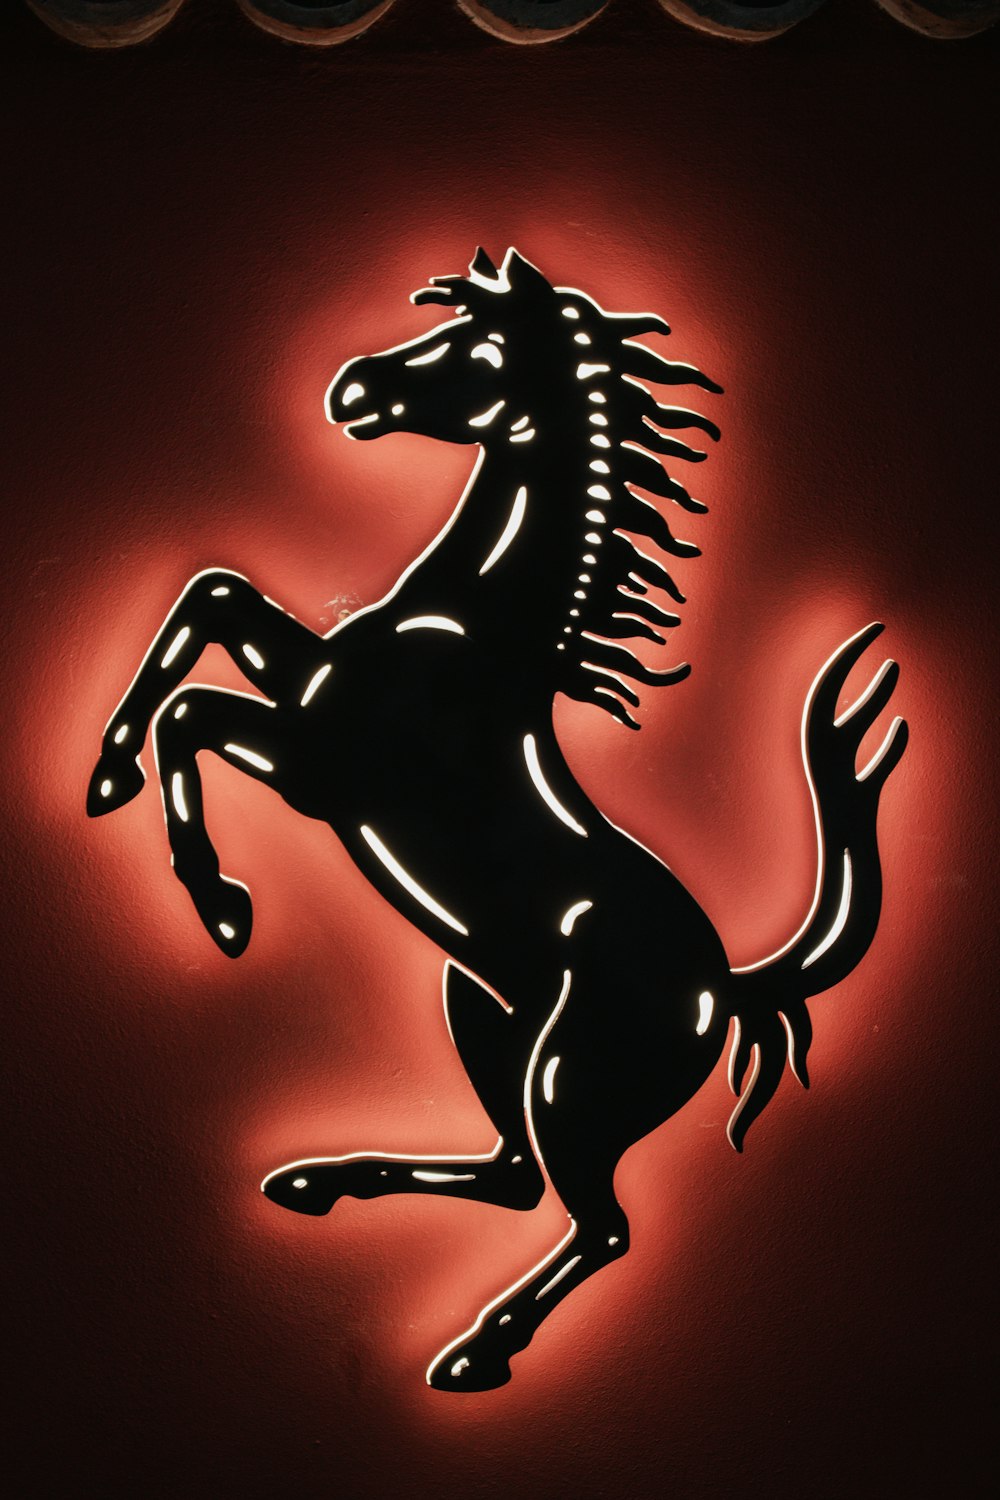 Un logotipo de Ferrari negro y rojo en una pared roja